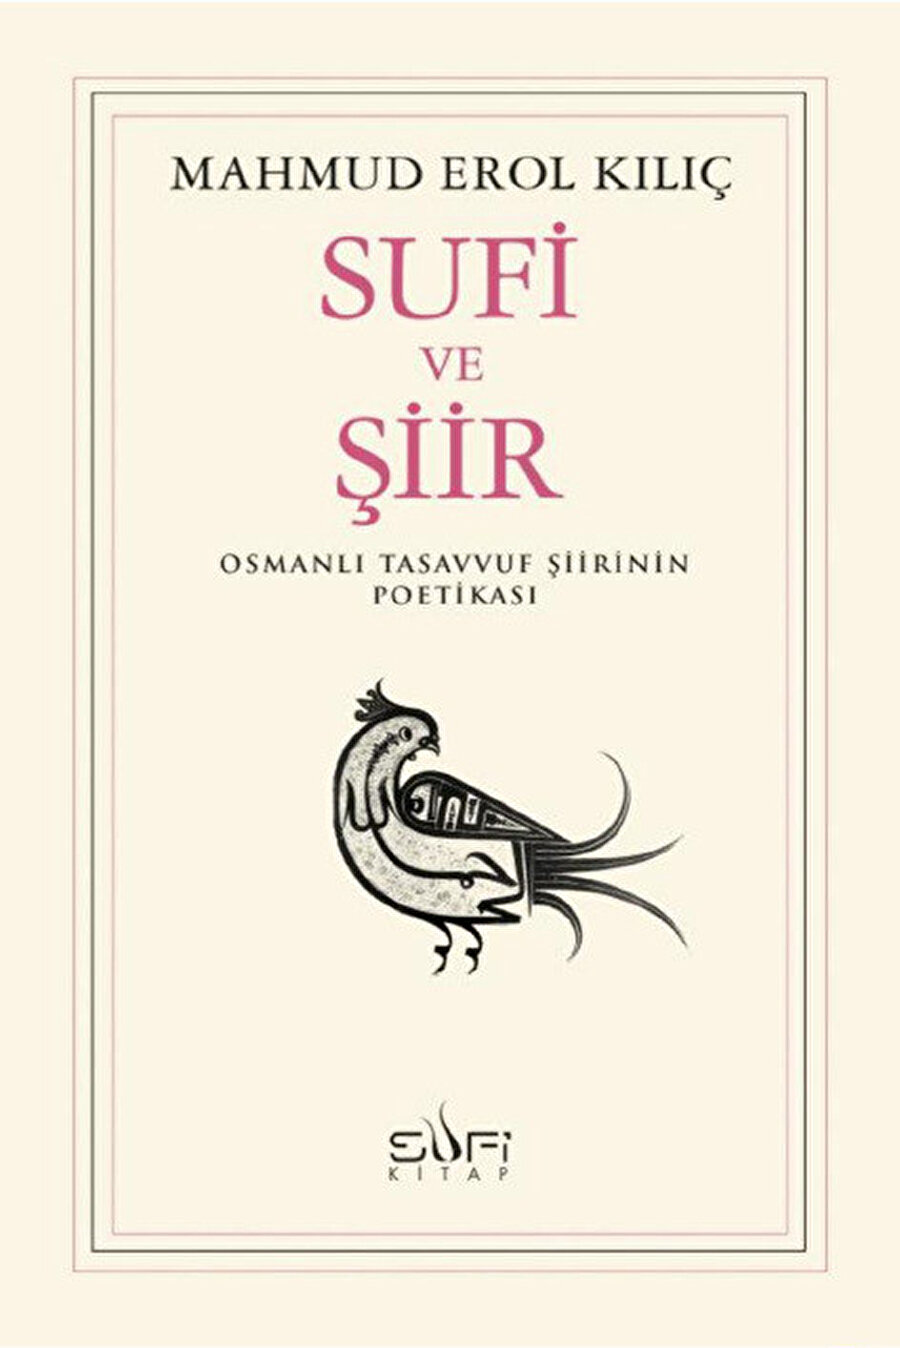 Klasik dünyada edebiyatın ilahiyatla, sanatçının da ilahi ilhamla bağlantı noktalarını görmek isteyenler için Sufi ve Şiir bulunmaz nimet.